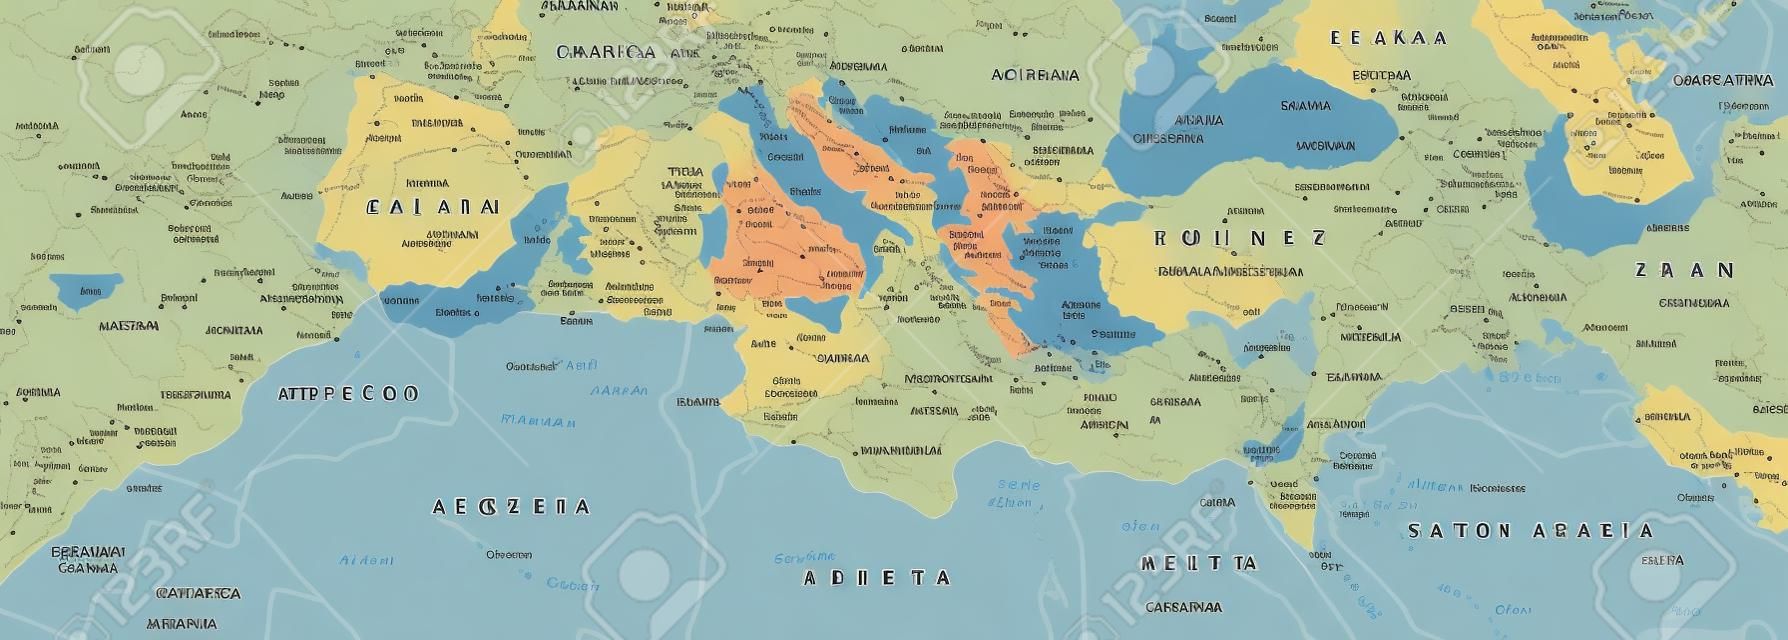 Basen Morza Śródziemnego Mapa polityczna. Południowa Europa Afryka Północna i Bliski Wschód w stolicach państw granice rzek i jezior. Angielski oznakowania i skalowanie. Ilustracja.